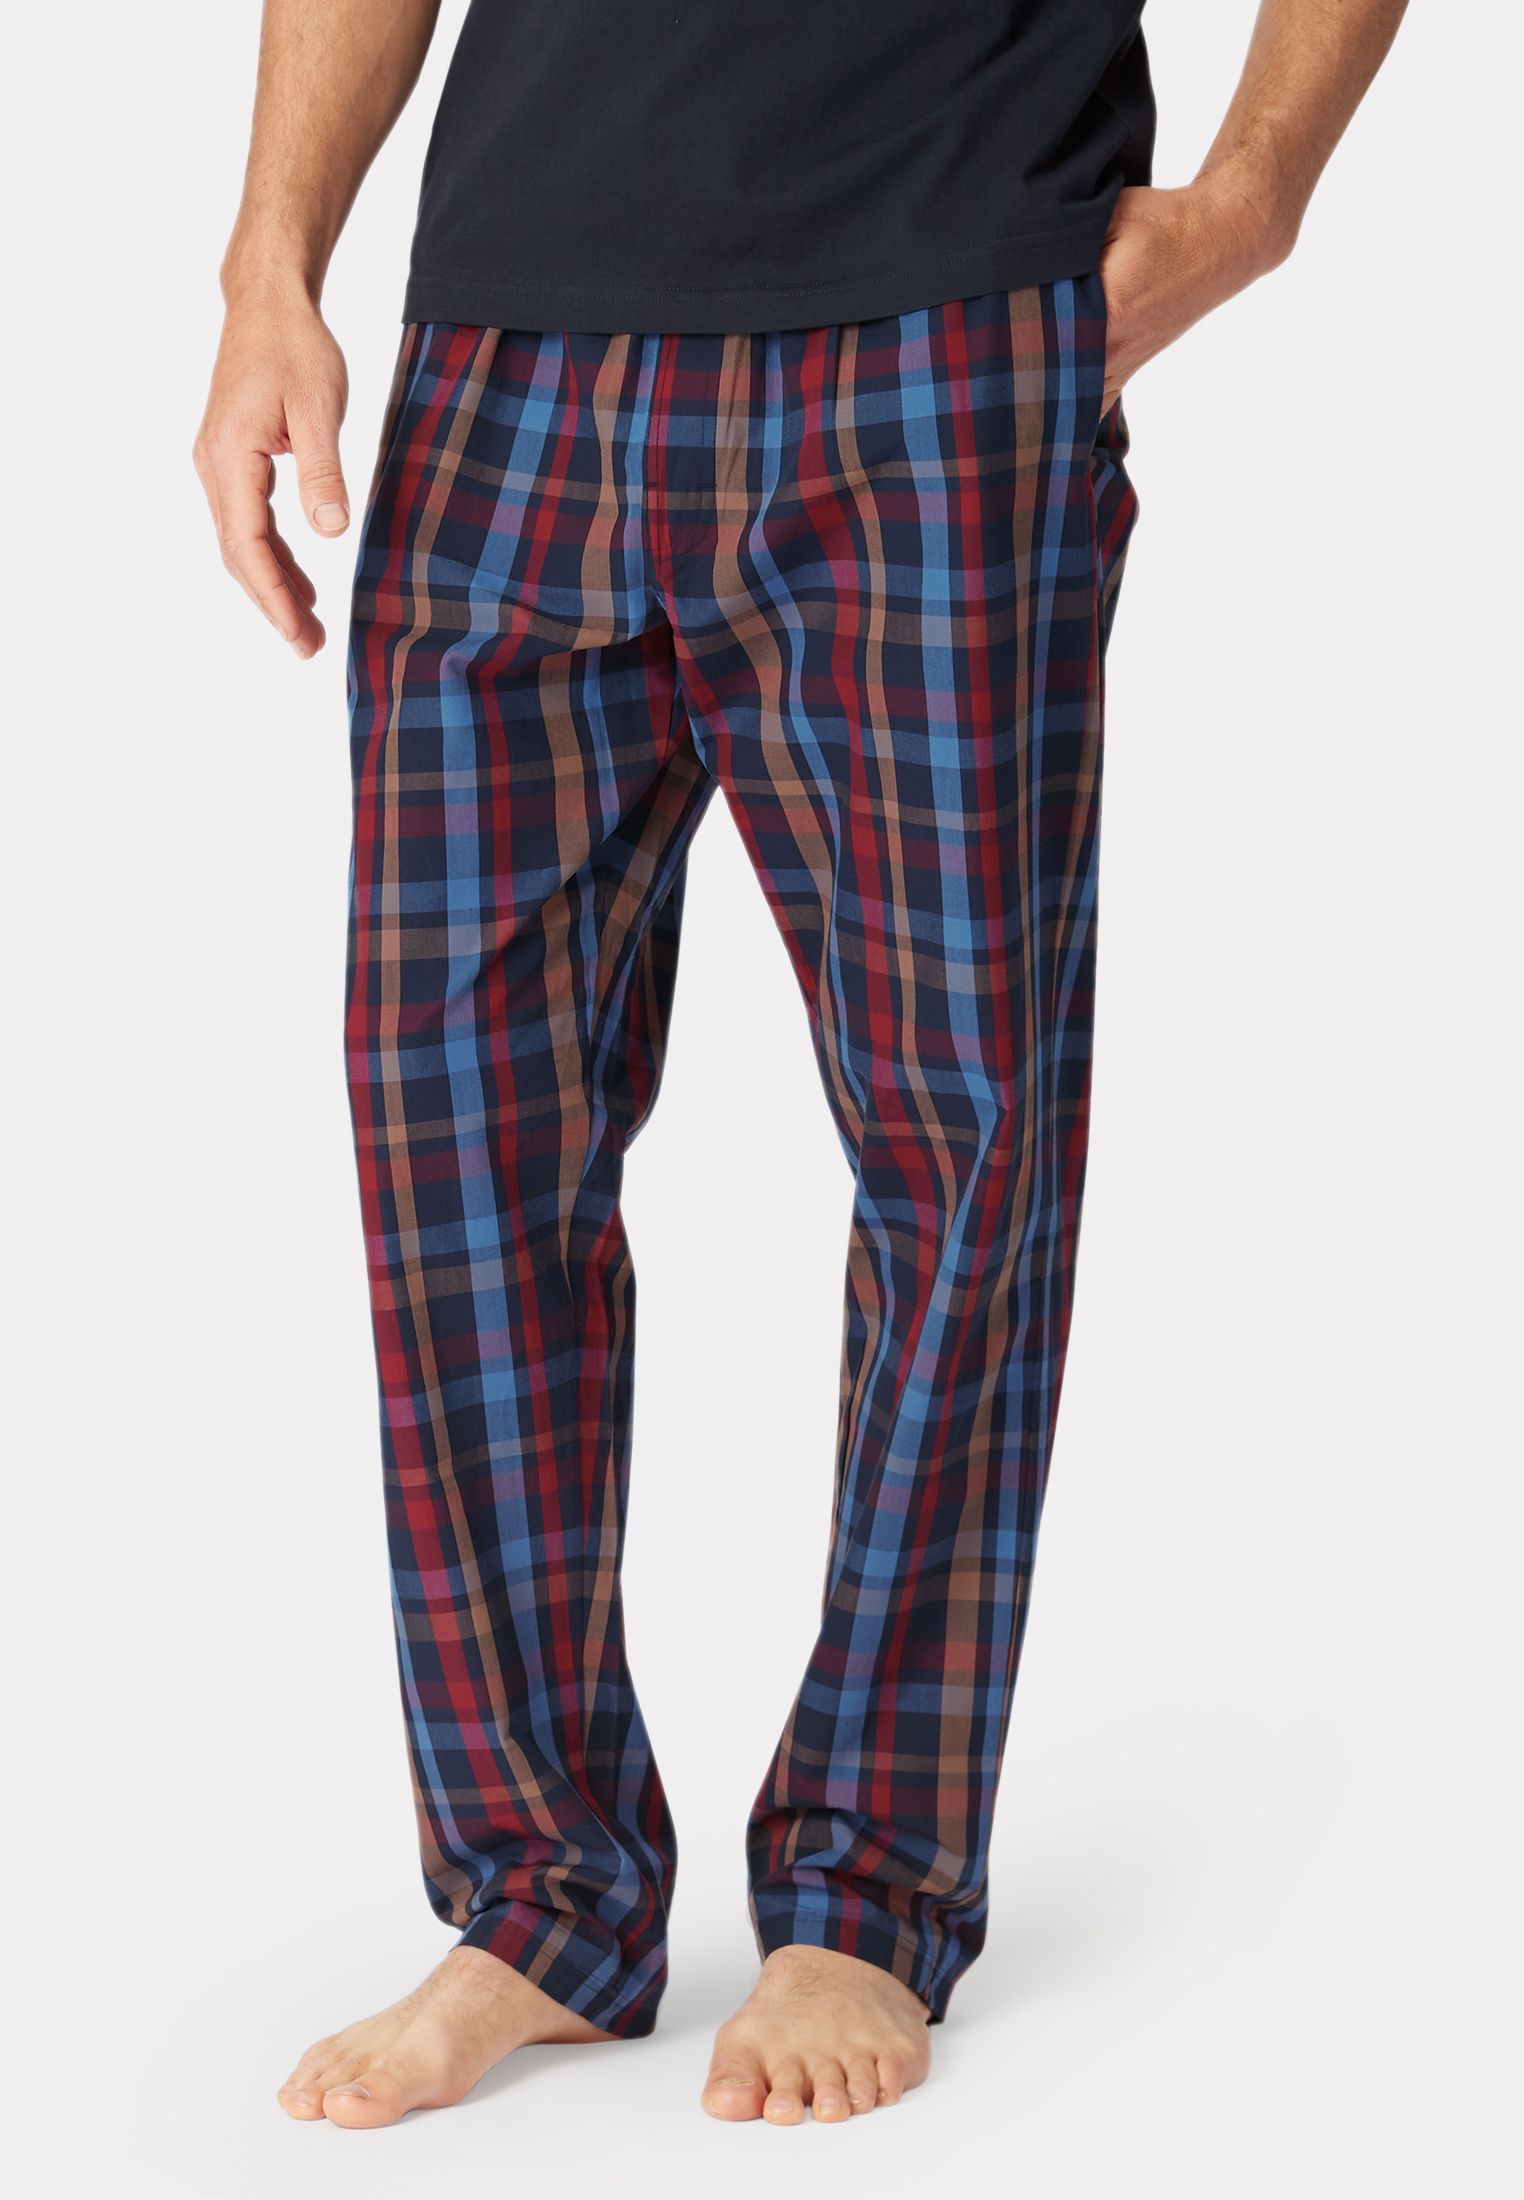 Buy Check Pajama & Cotton Pyjamas For Men - Apella